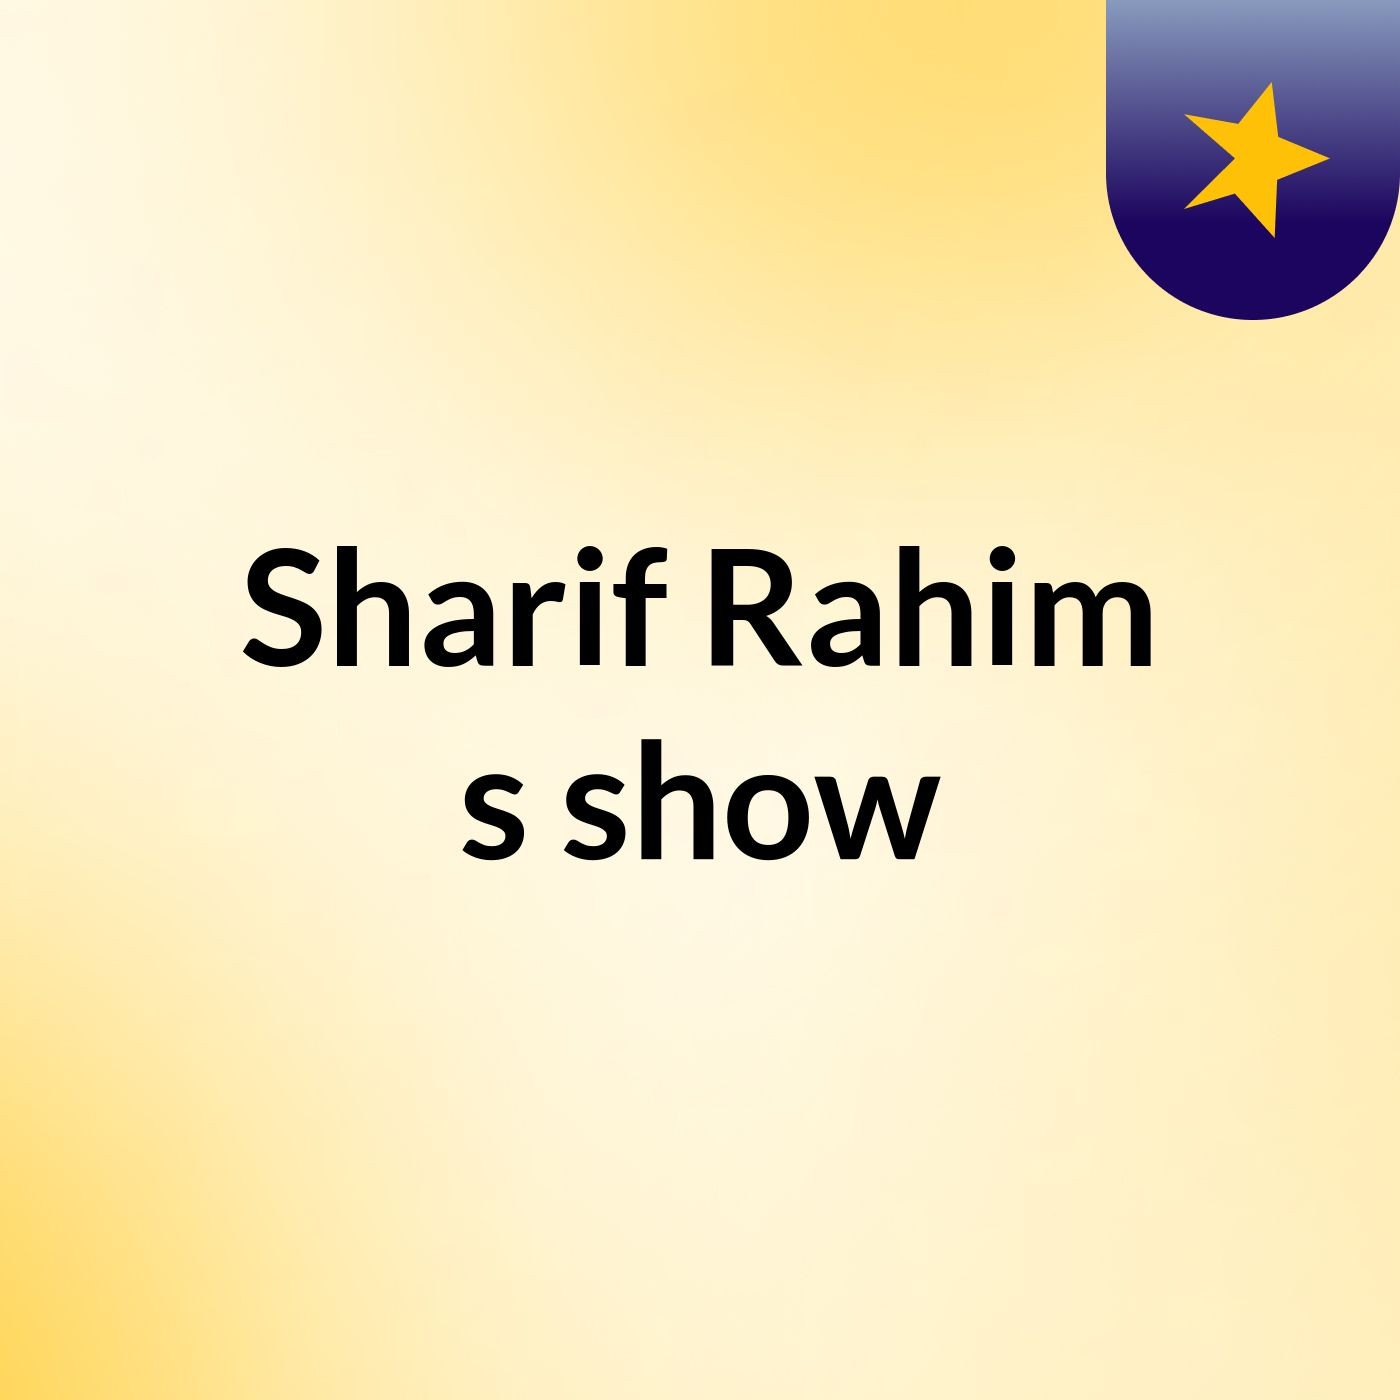 Sharif Rahim's show